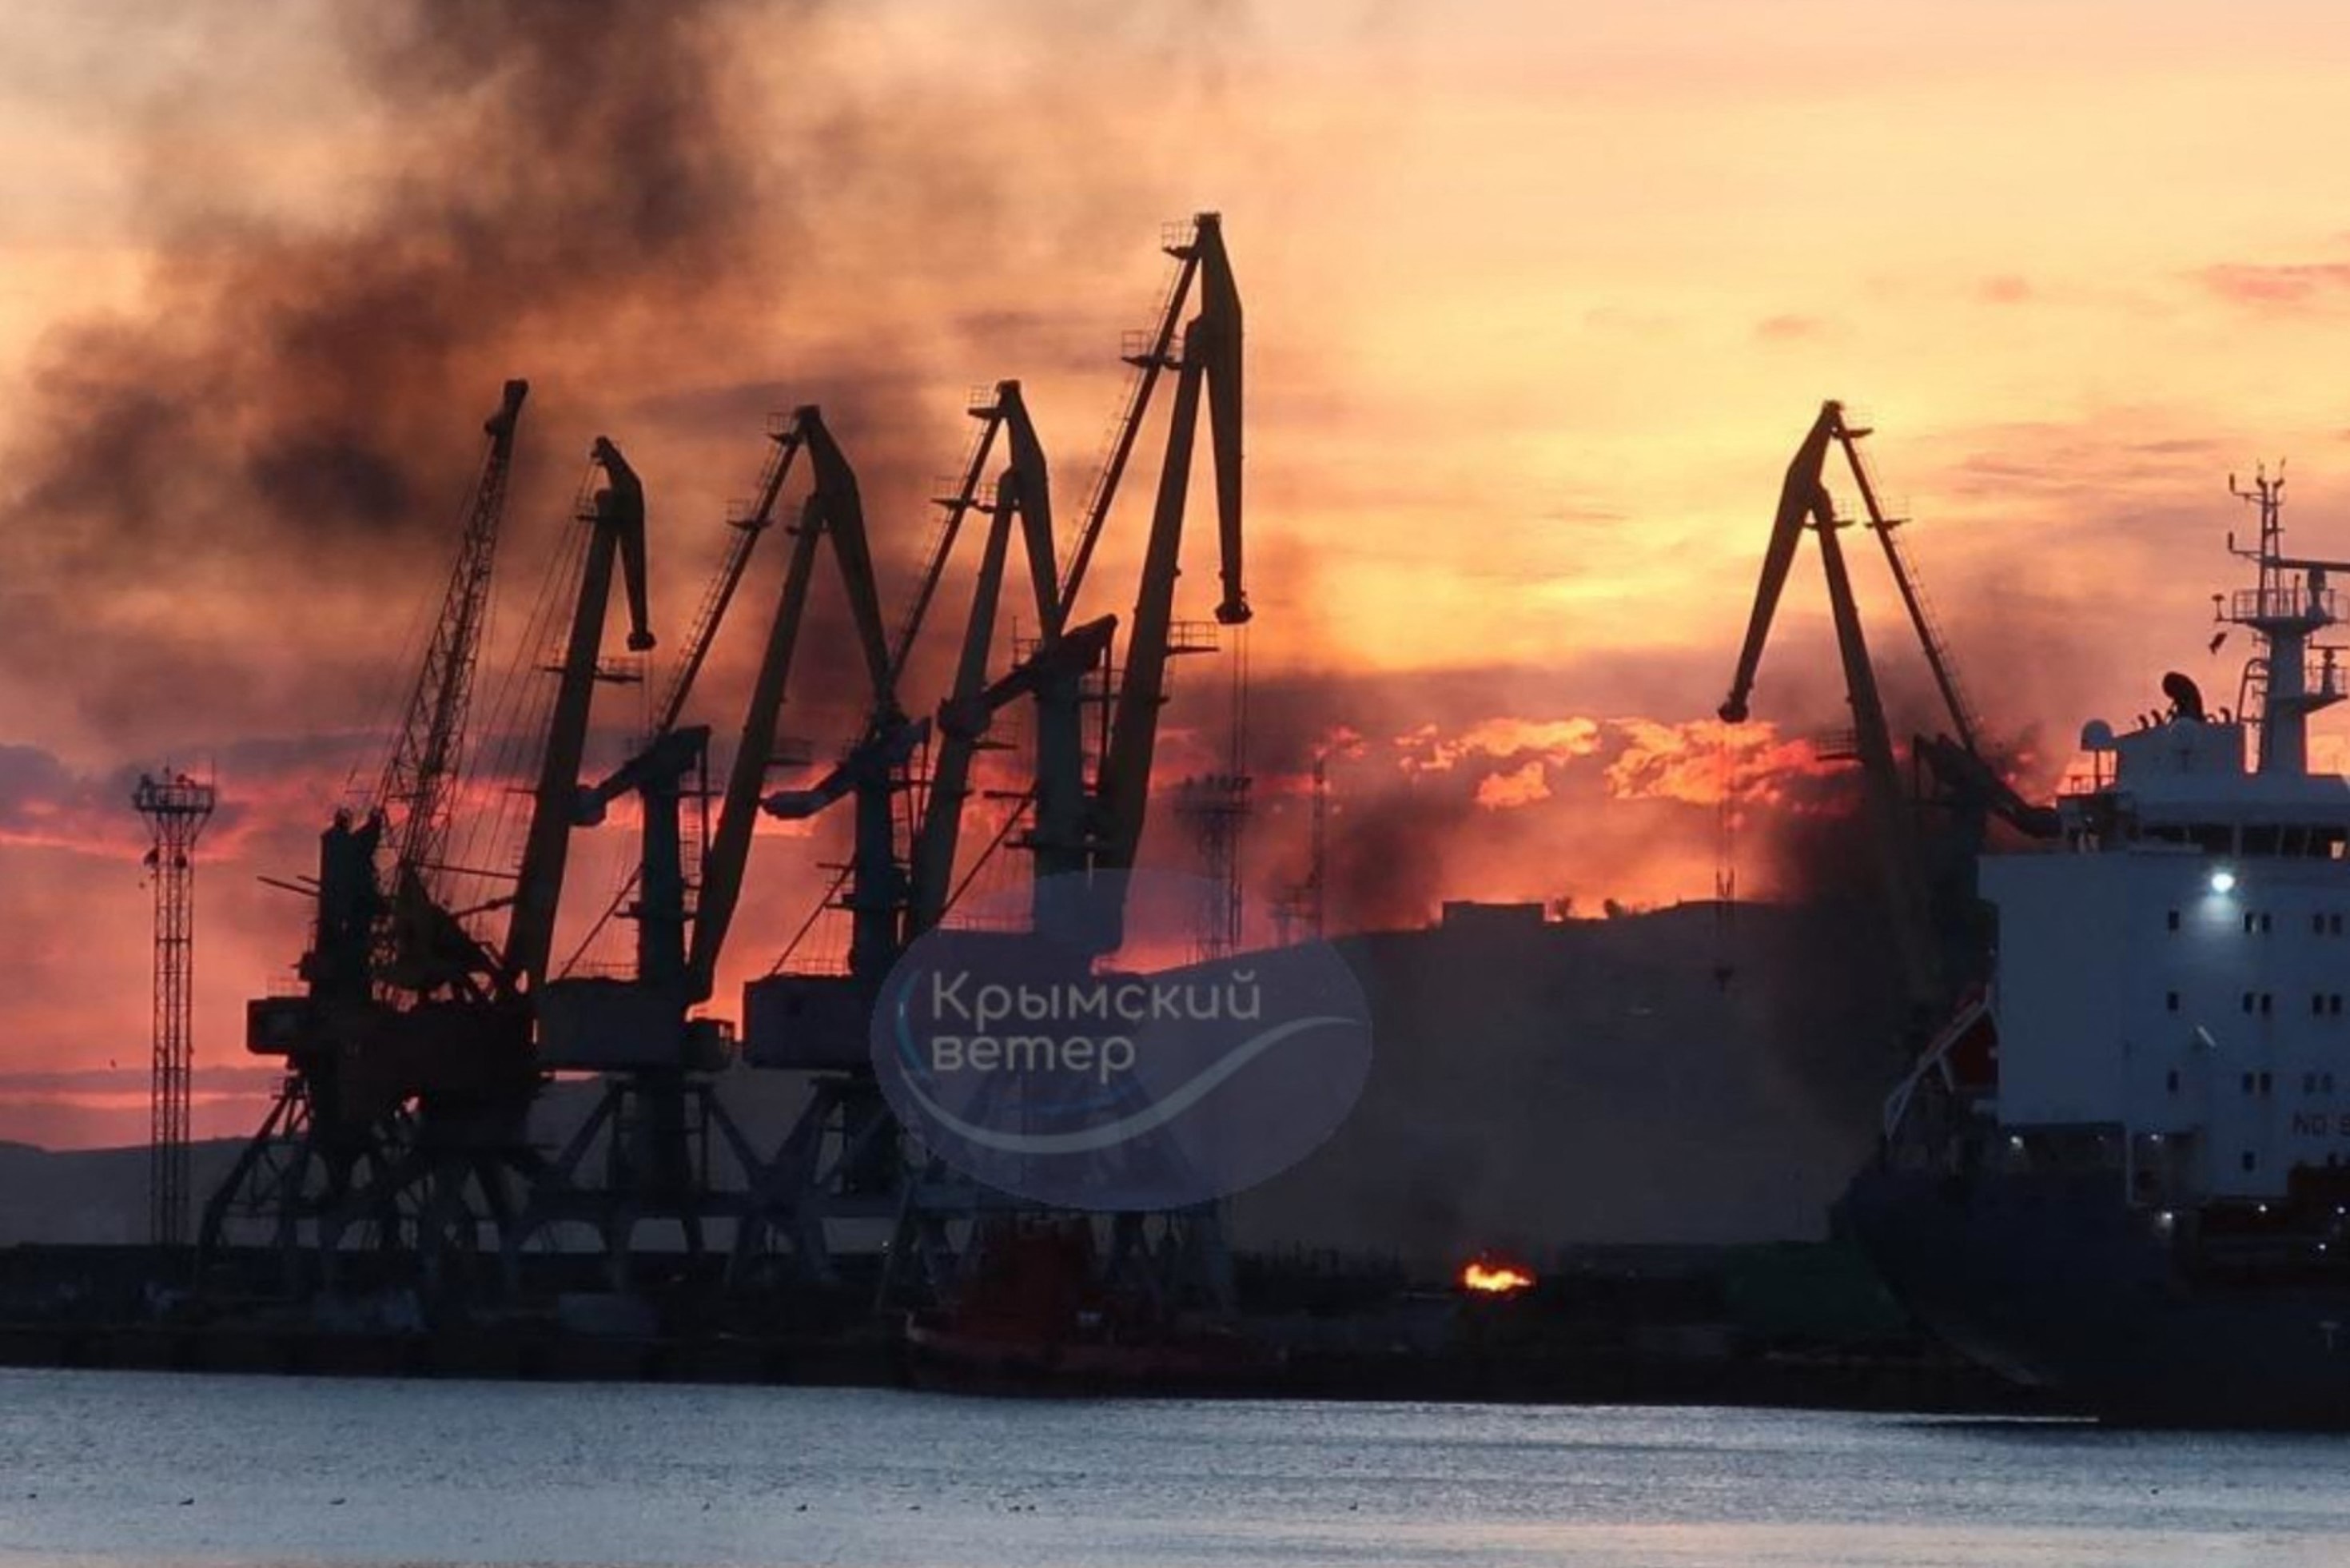 Humo que se eleva sobre un buque de guerra dañado tras un ataque ucraniano en el puerto de Feodosia, Crimea controlada por Rusia.